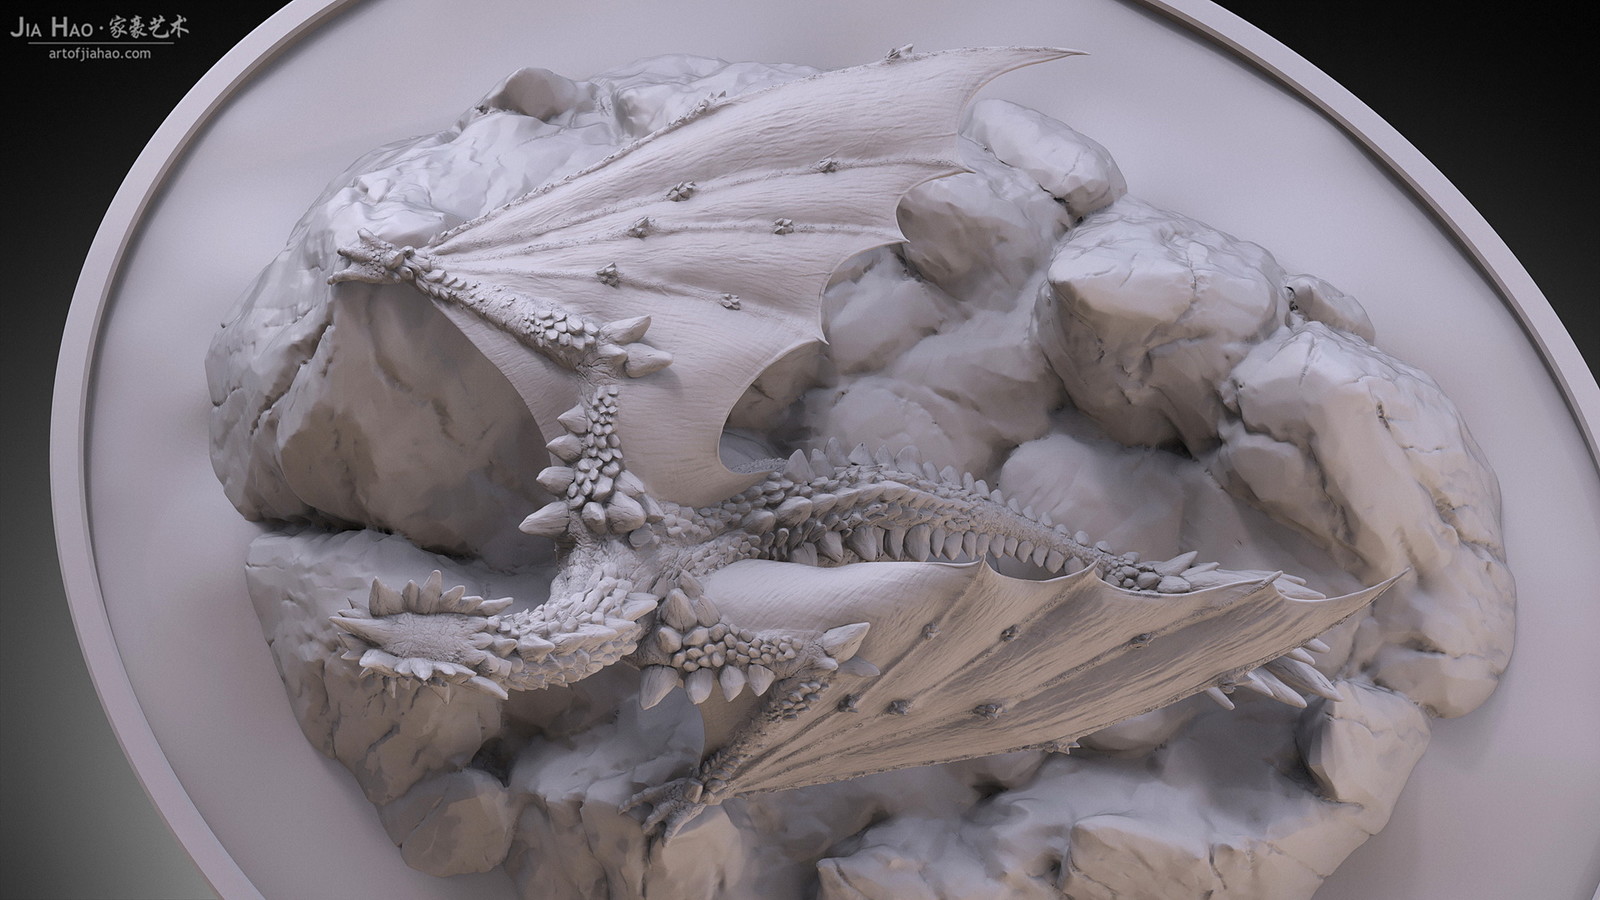 Rock Dragon Digital Sculpture